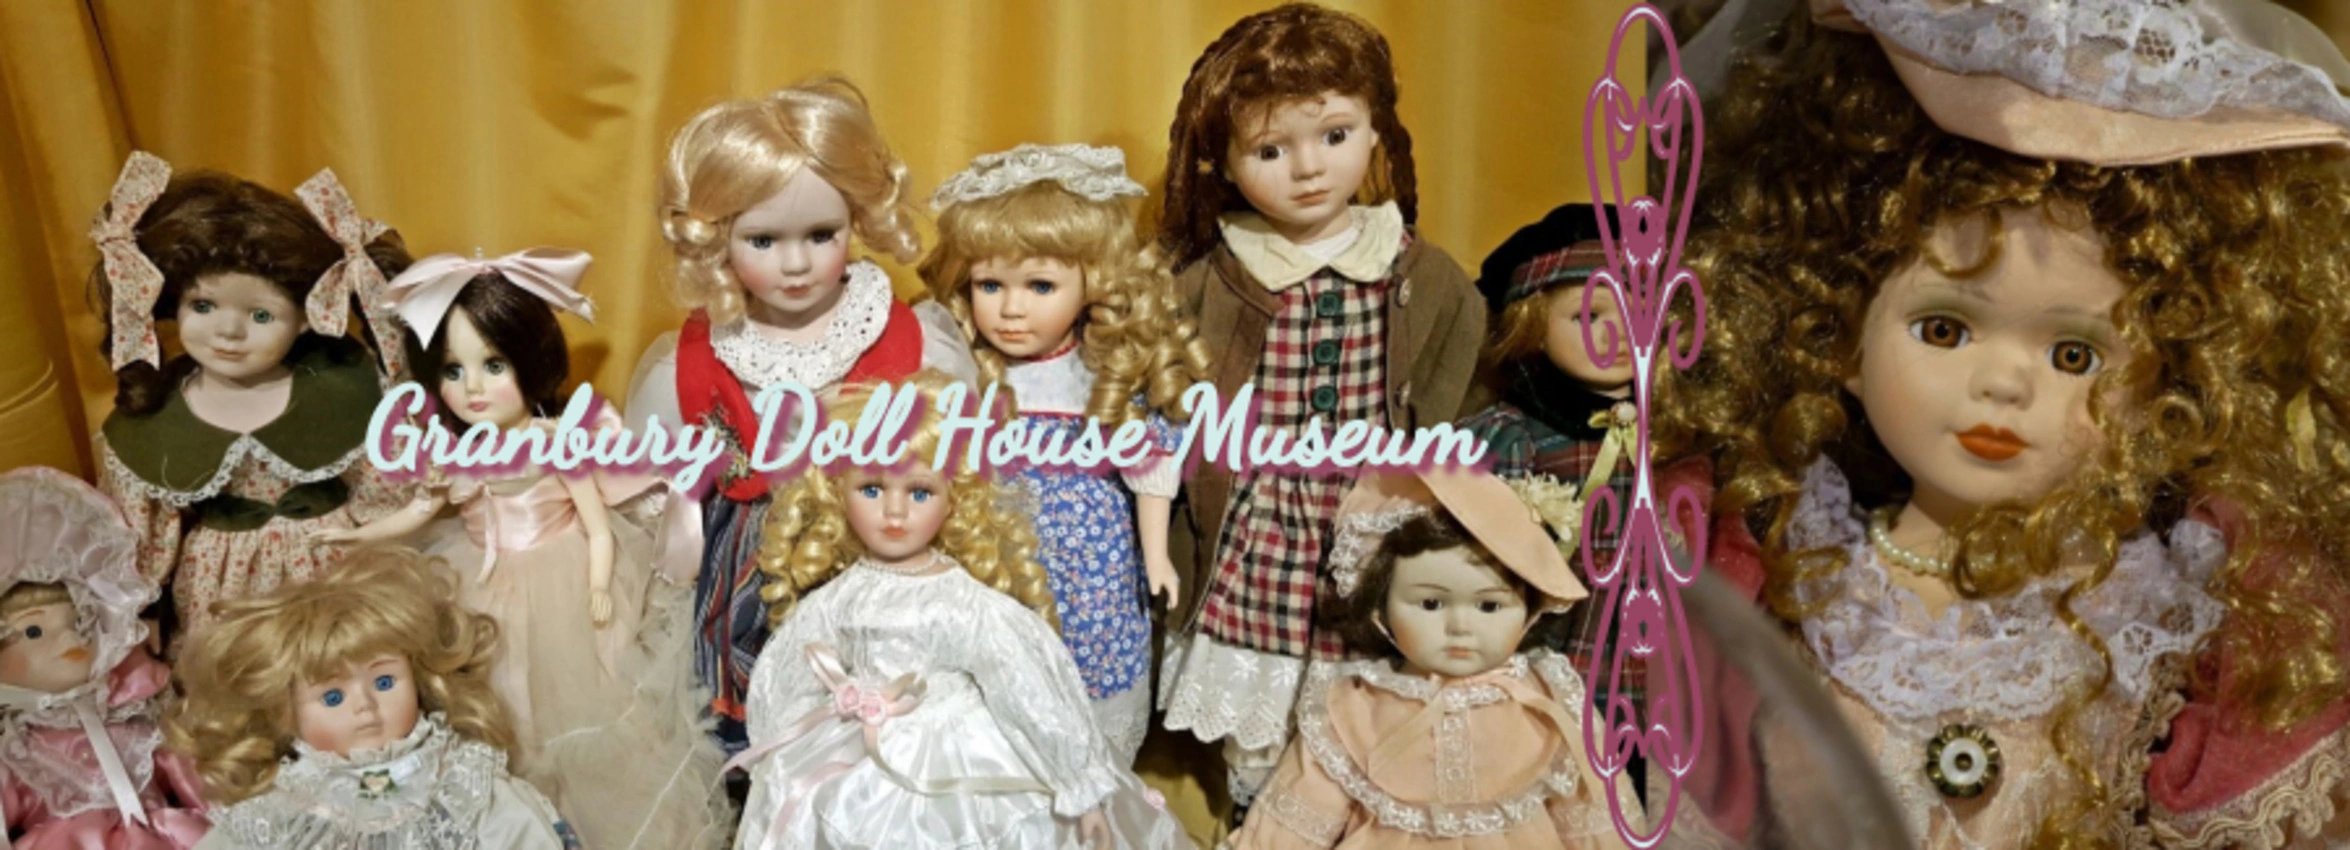 Granbury-Doll-House-Museum_Desktop_ET